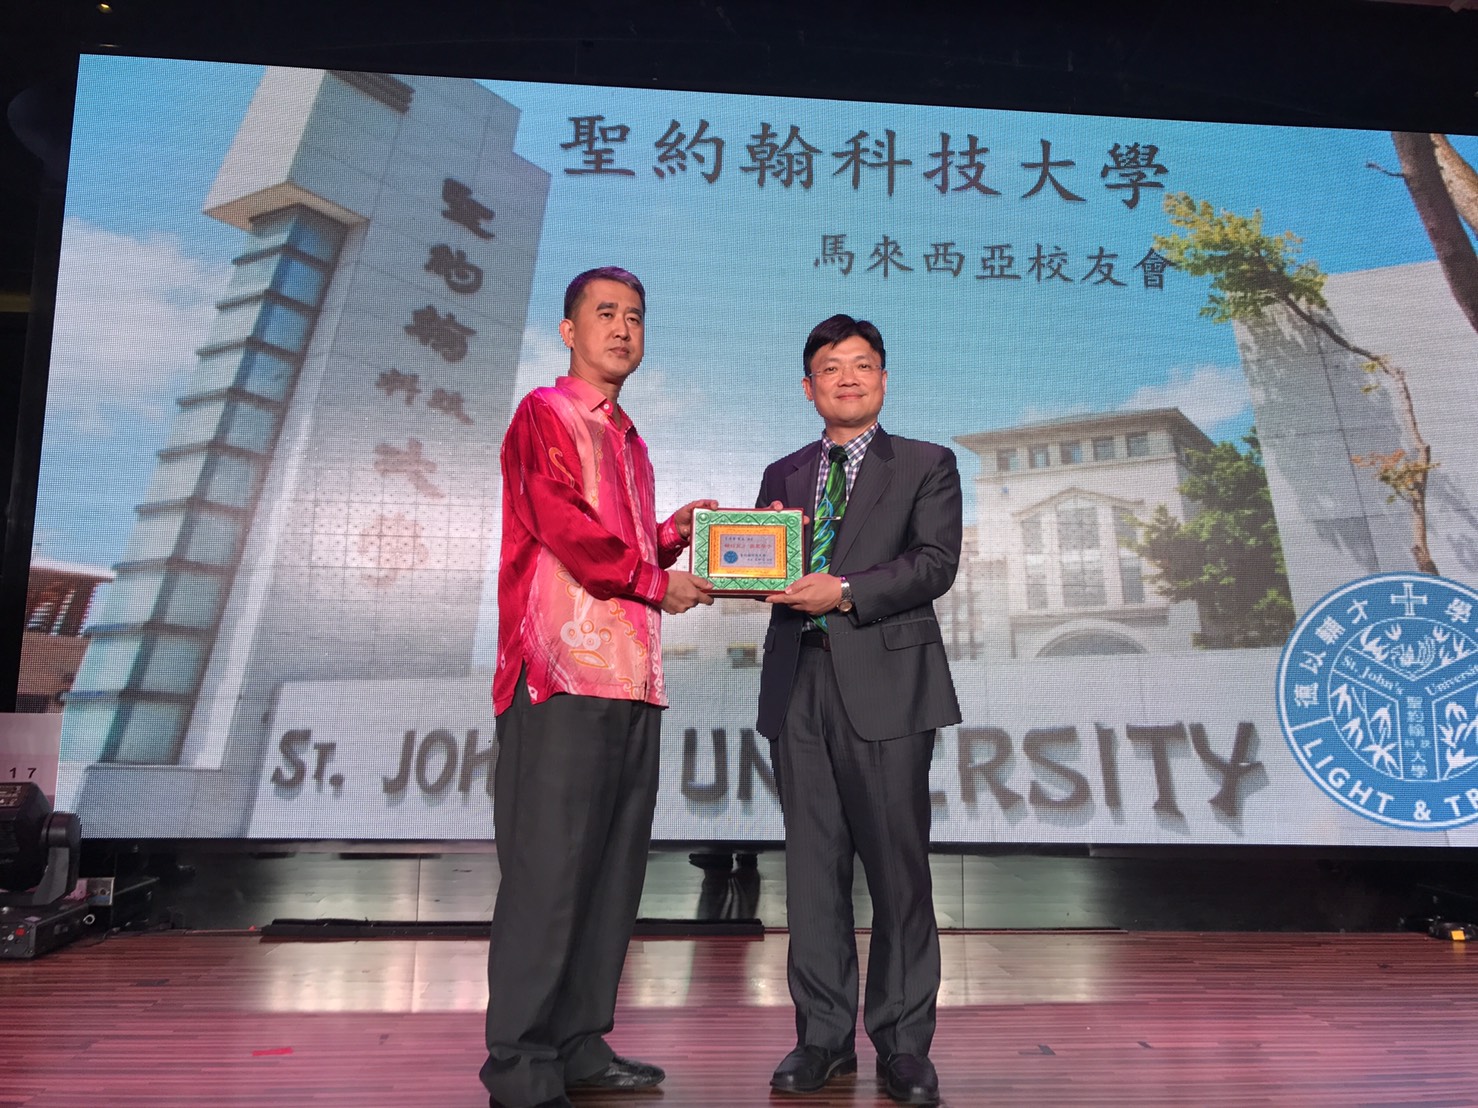 艾和昌校長（右）致贈感謝狀予馬來西亞校友會主席王清華（左），感謝其輔校育才、嘉惠母校學子